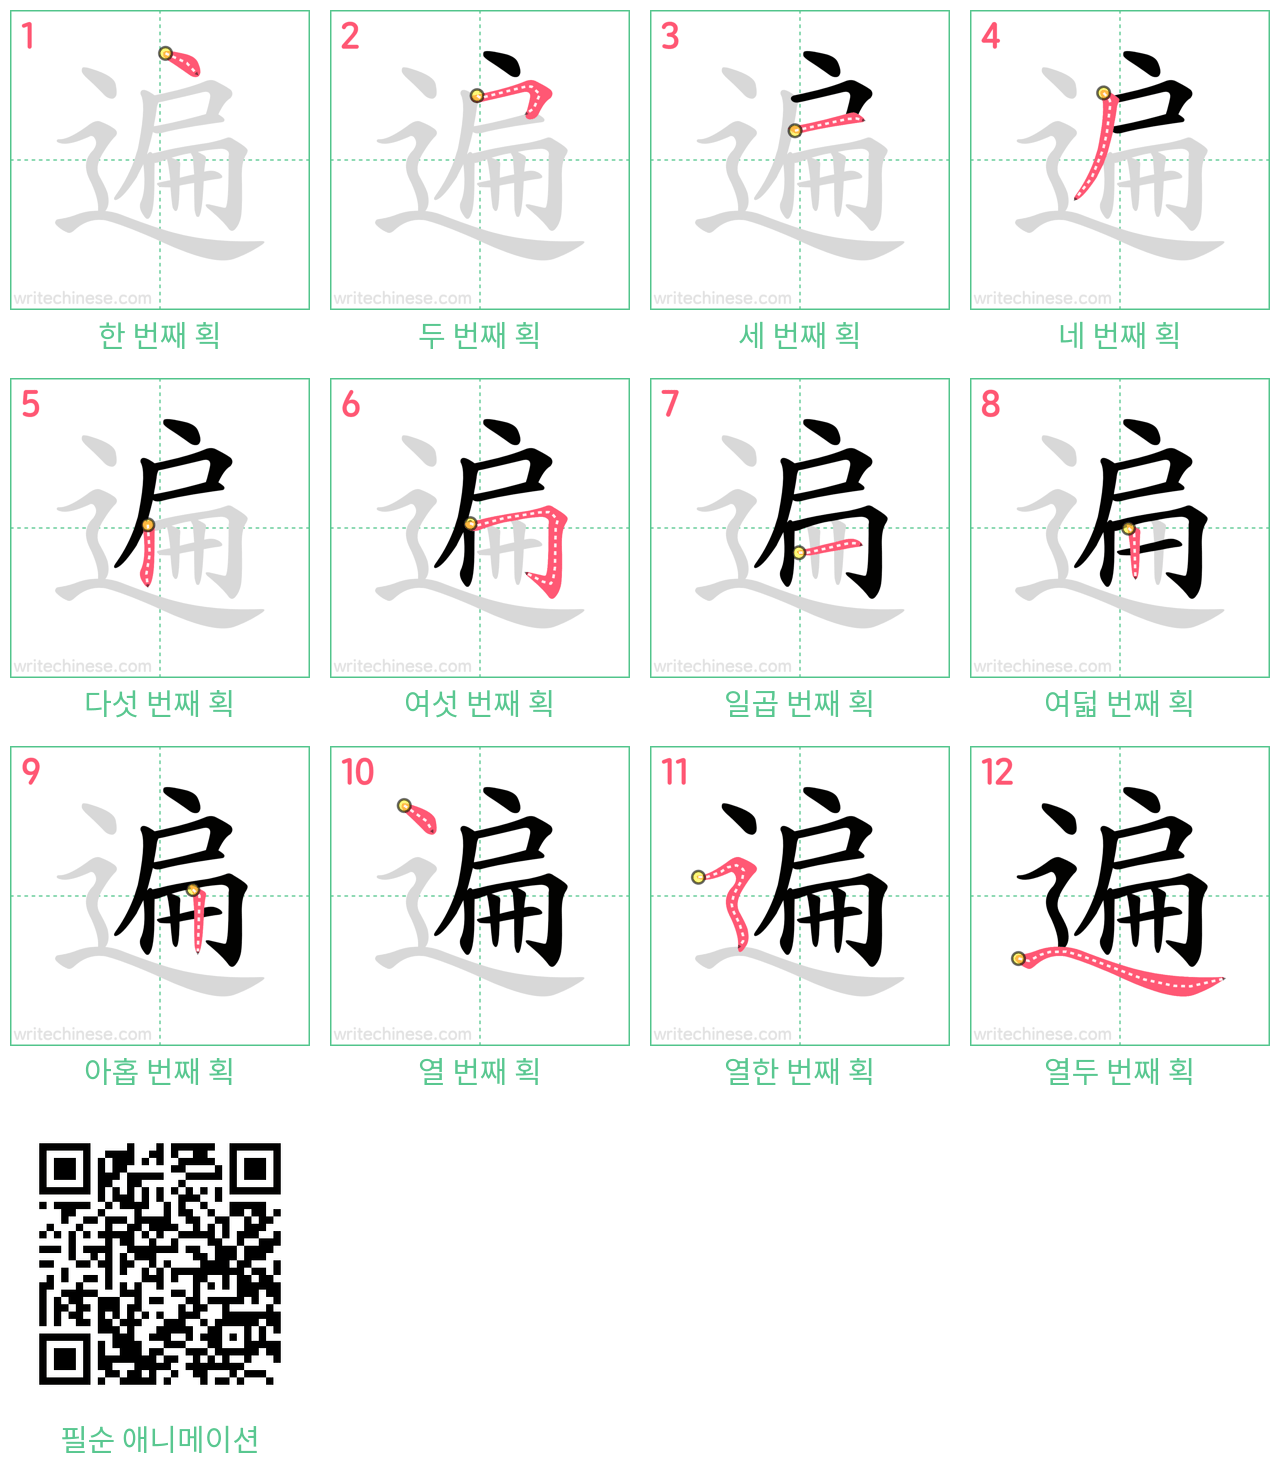 遍 step-by-step stroke order diagrams